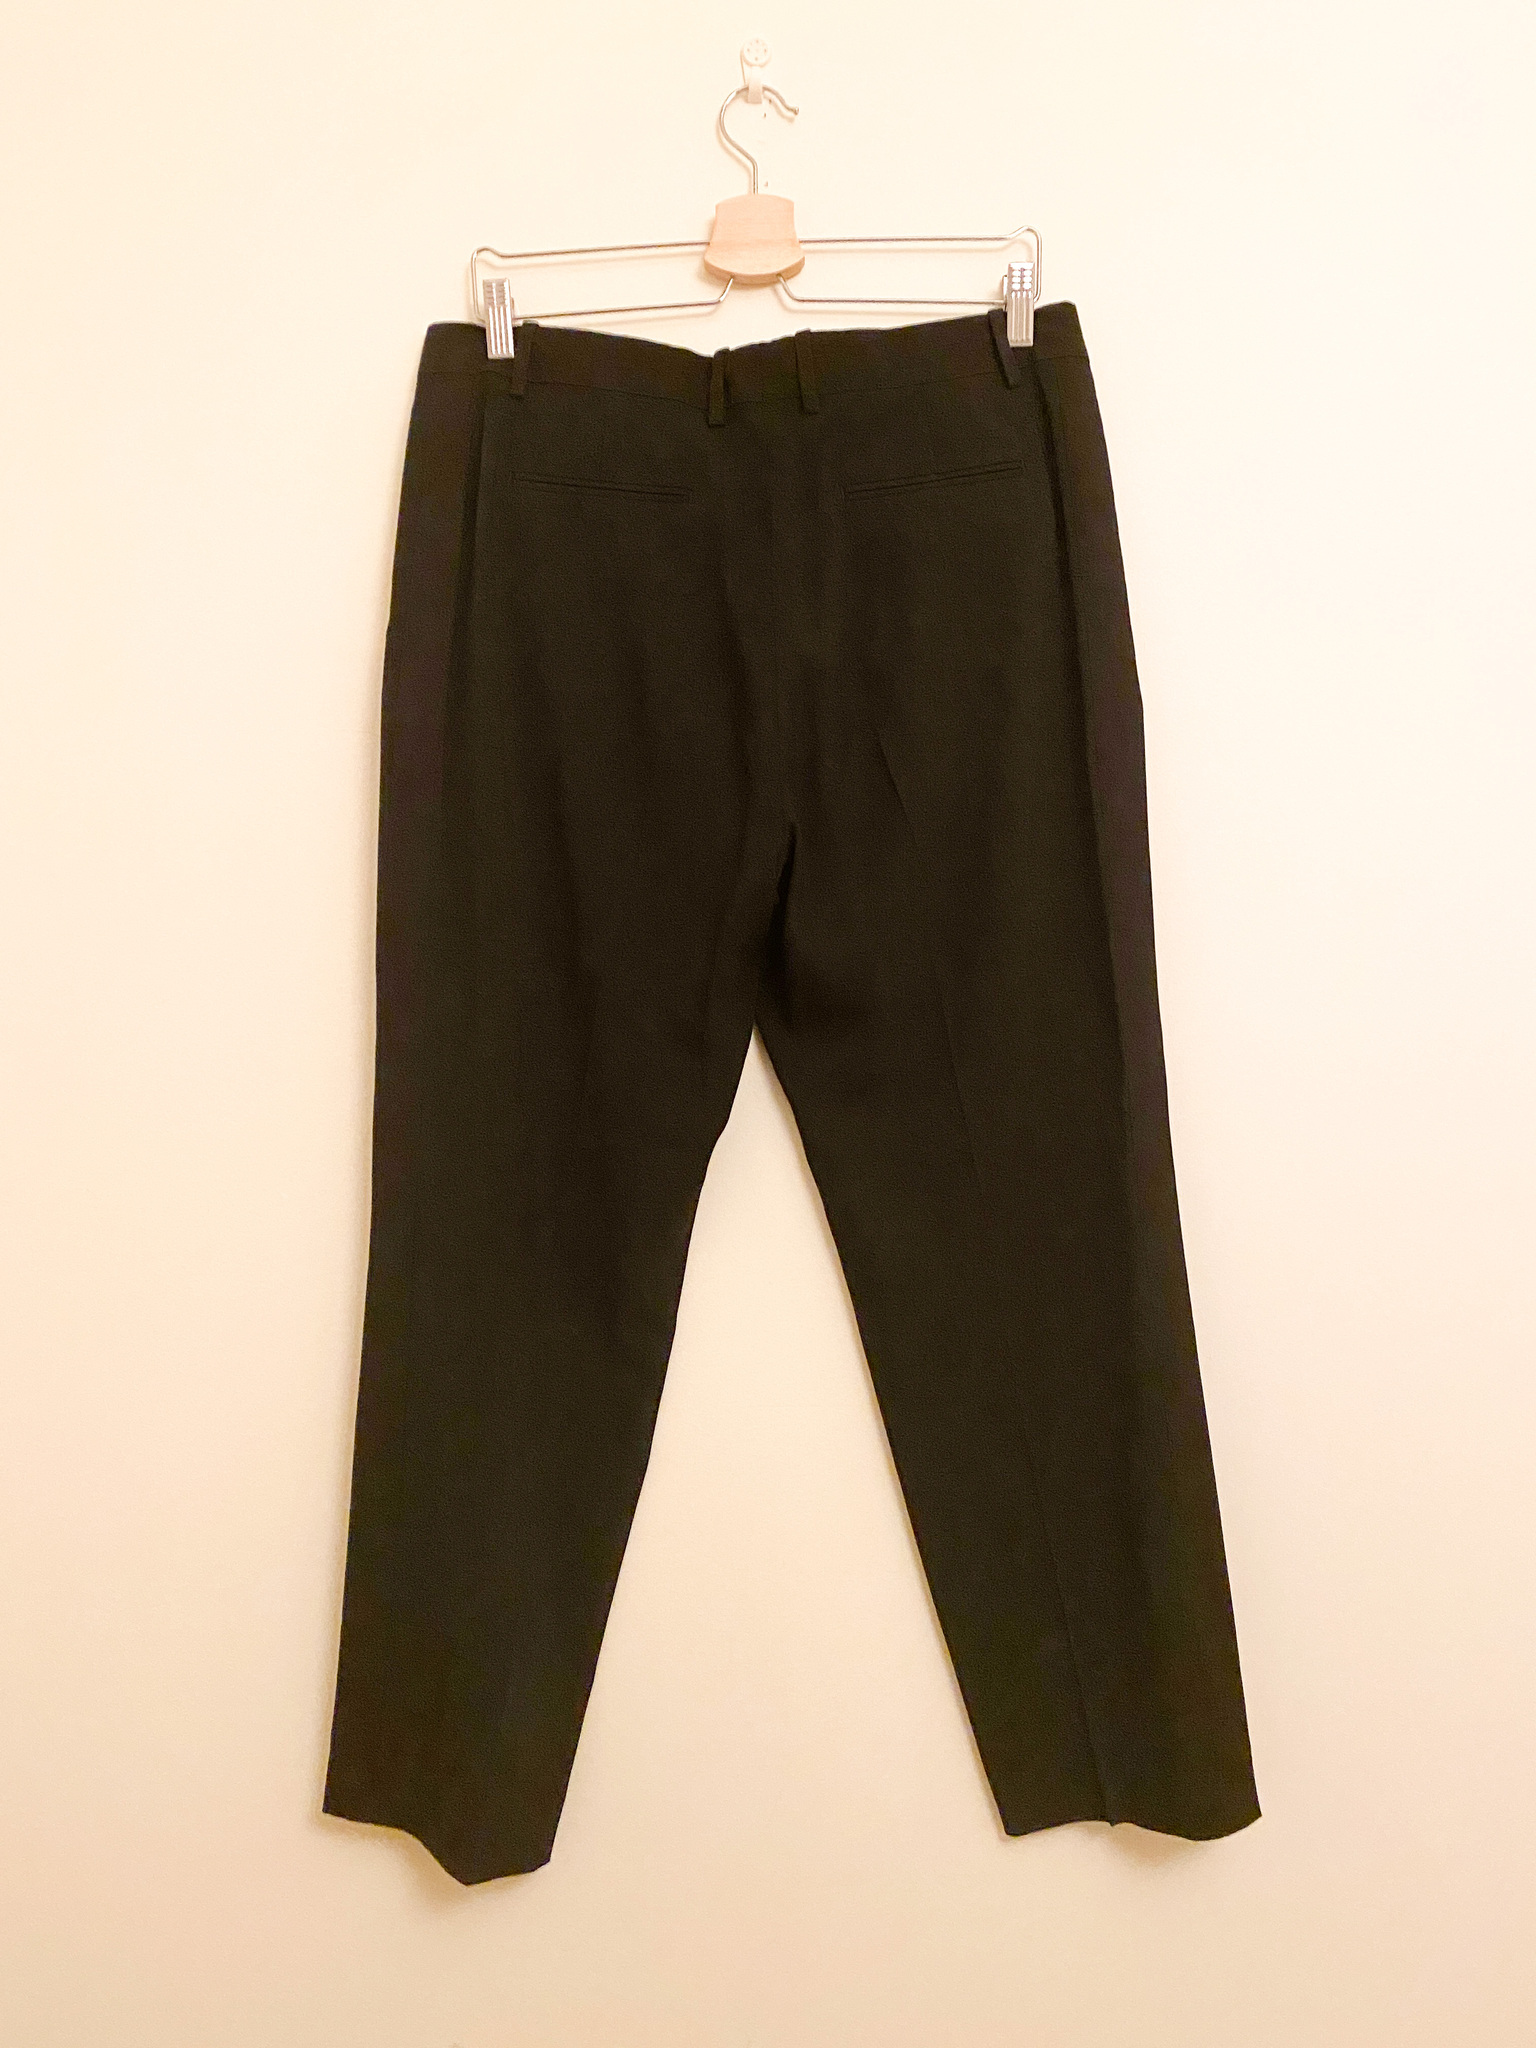 CELINE Suit Pants (FR42/EU40)